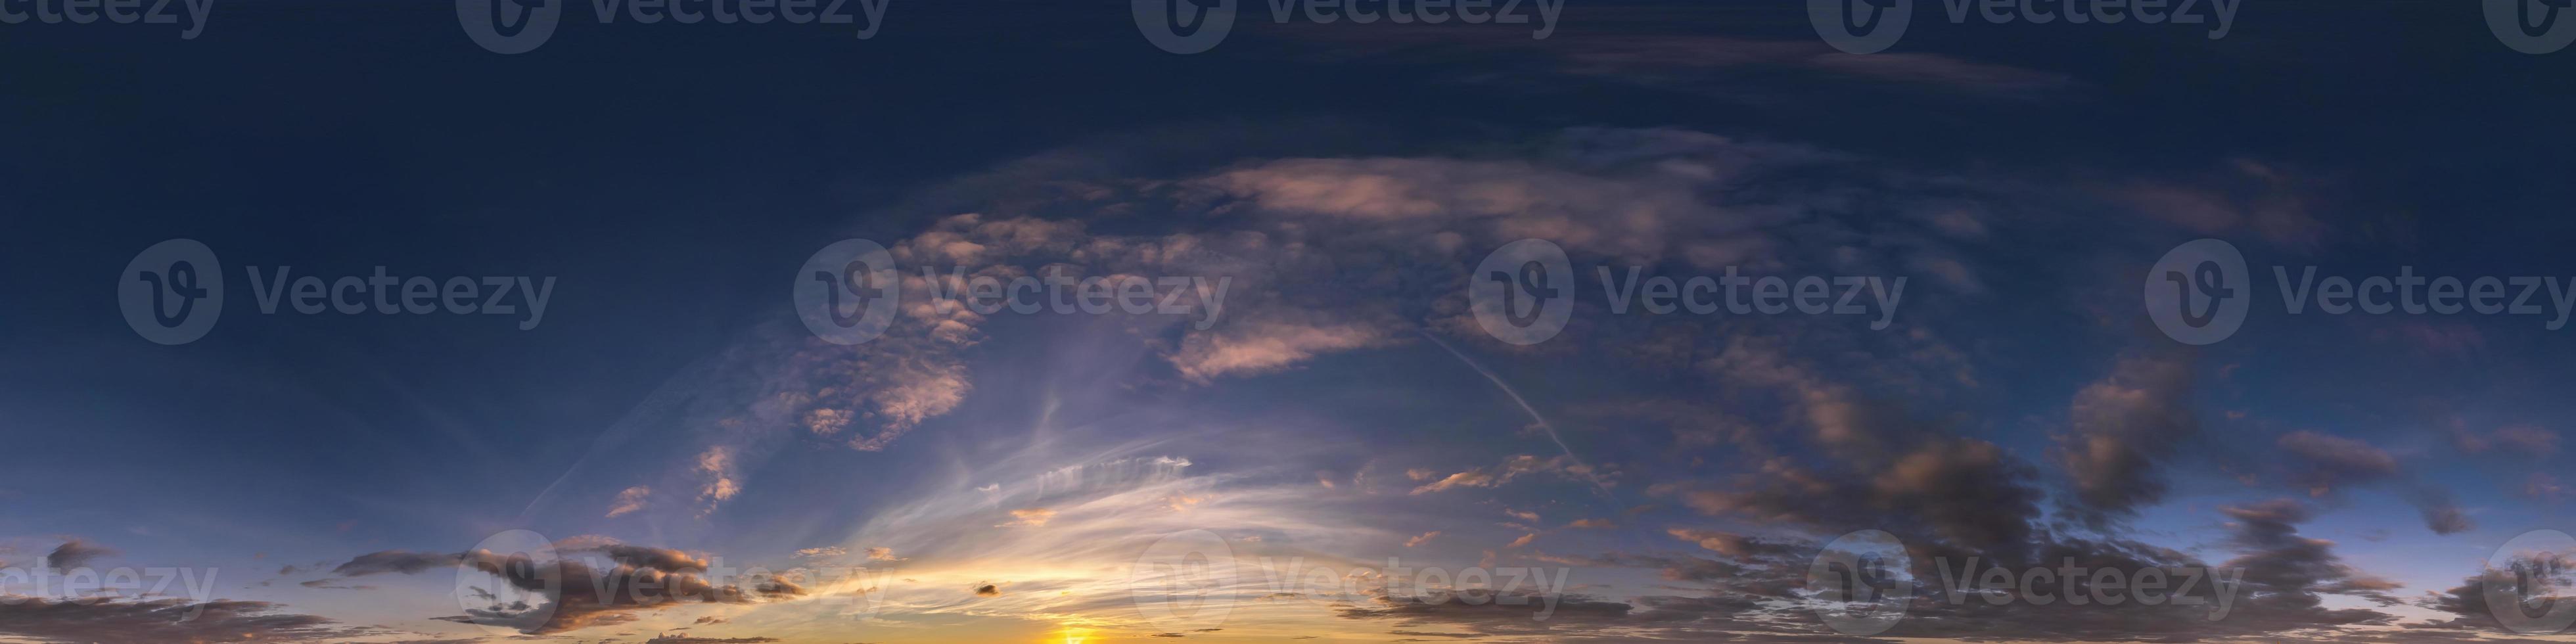 kväll blå himmel hdr 360 panorama med vit skön moln i sömlös utsprång med zenit för använda sig av i 3d grafik eller spel utveckling som himmel kupol eller redigera Drönare skott för himmel ersättning foto